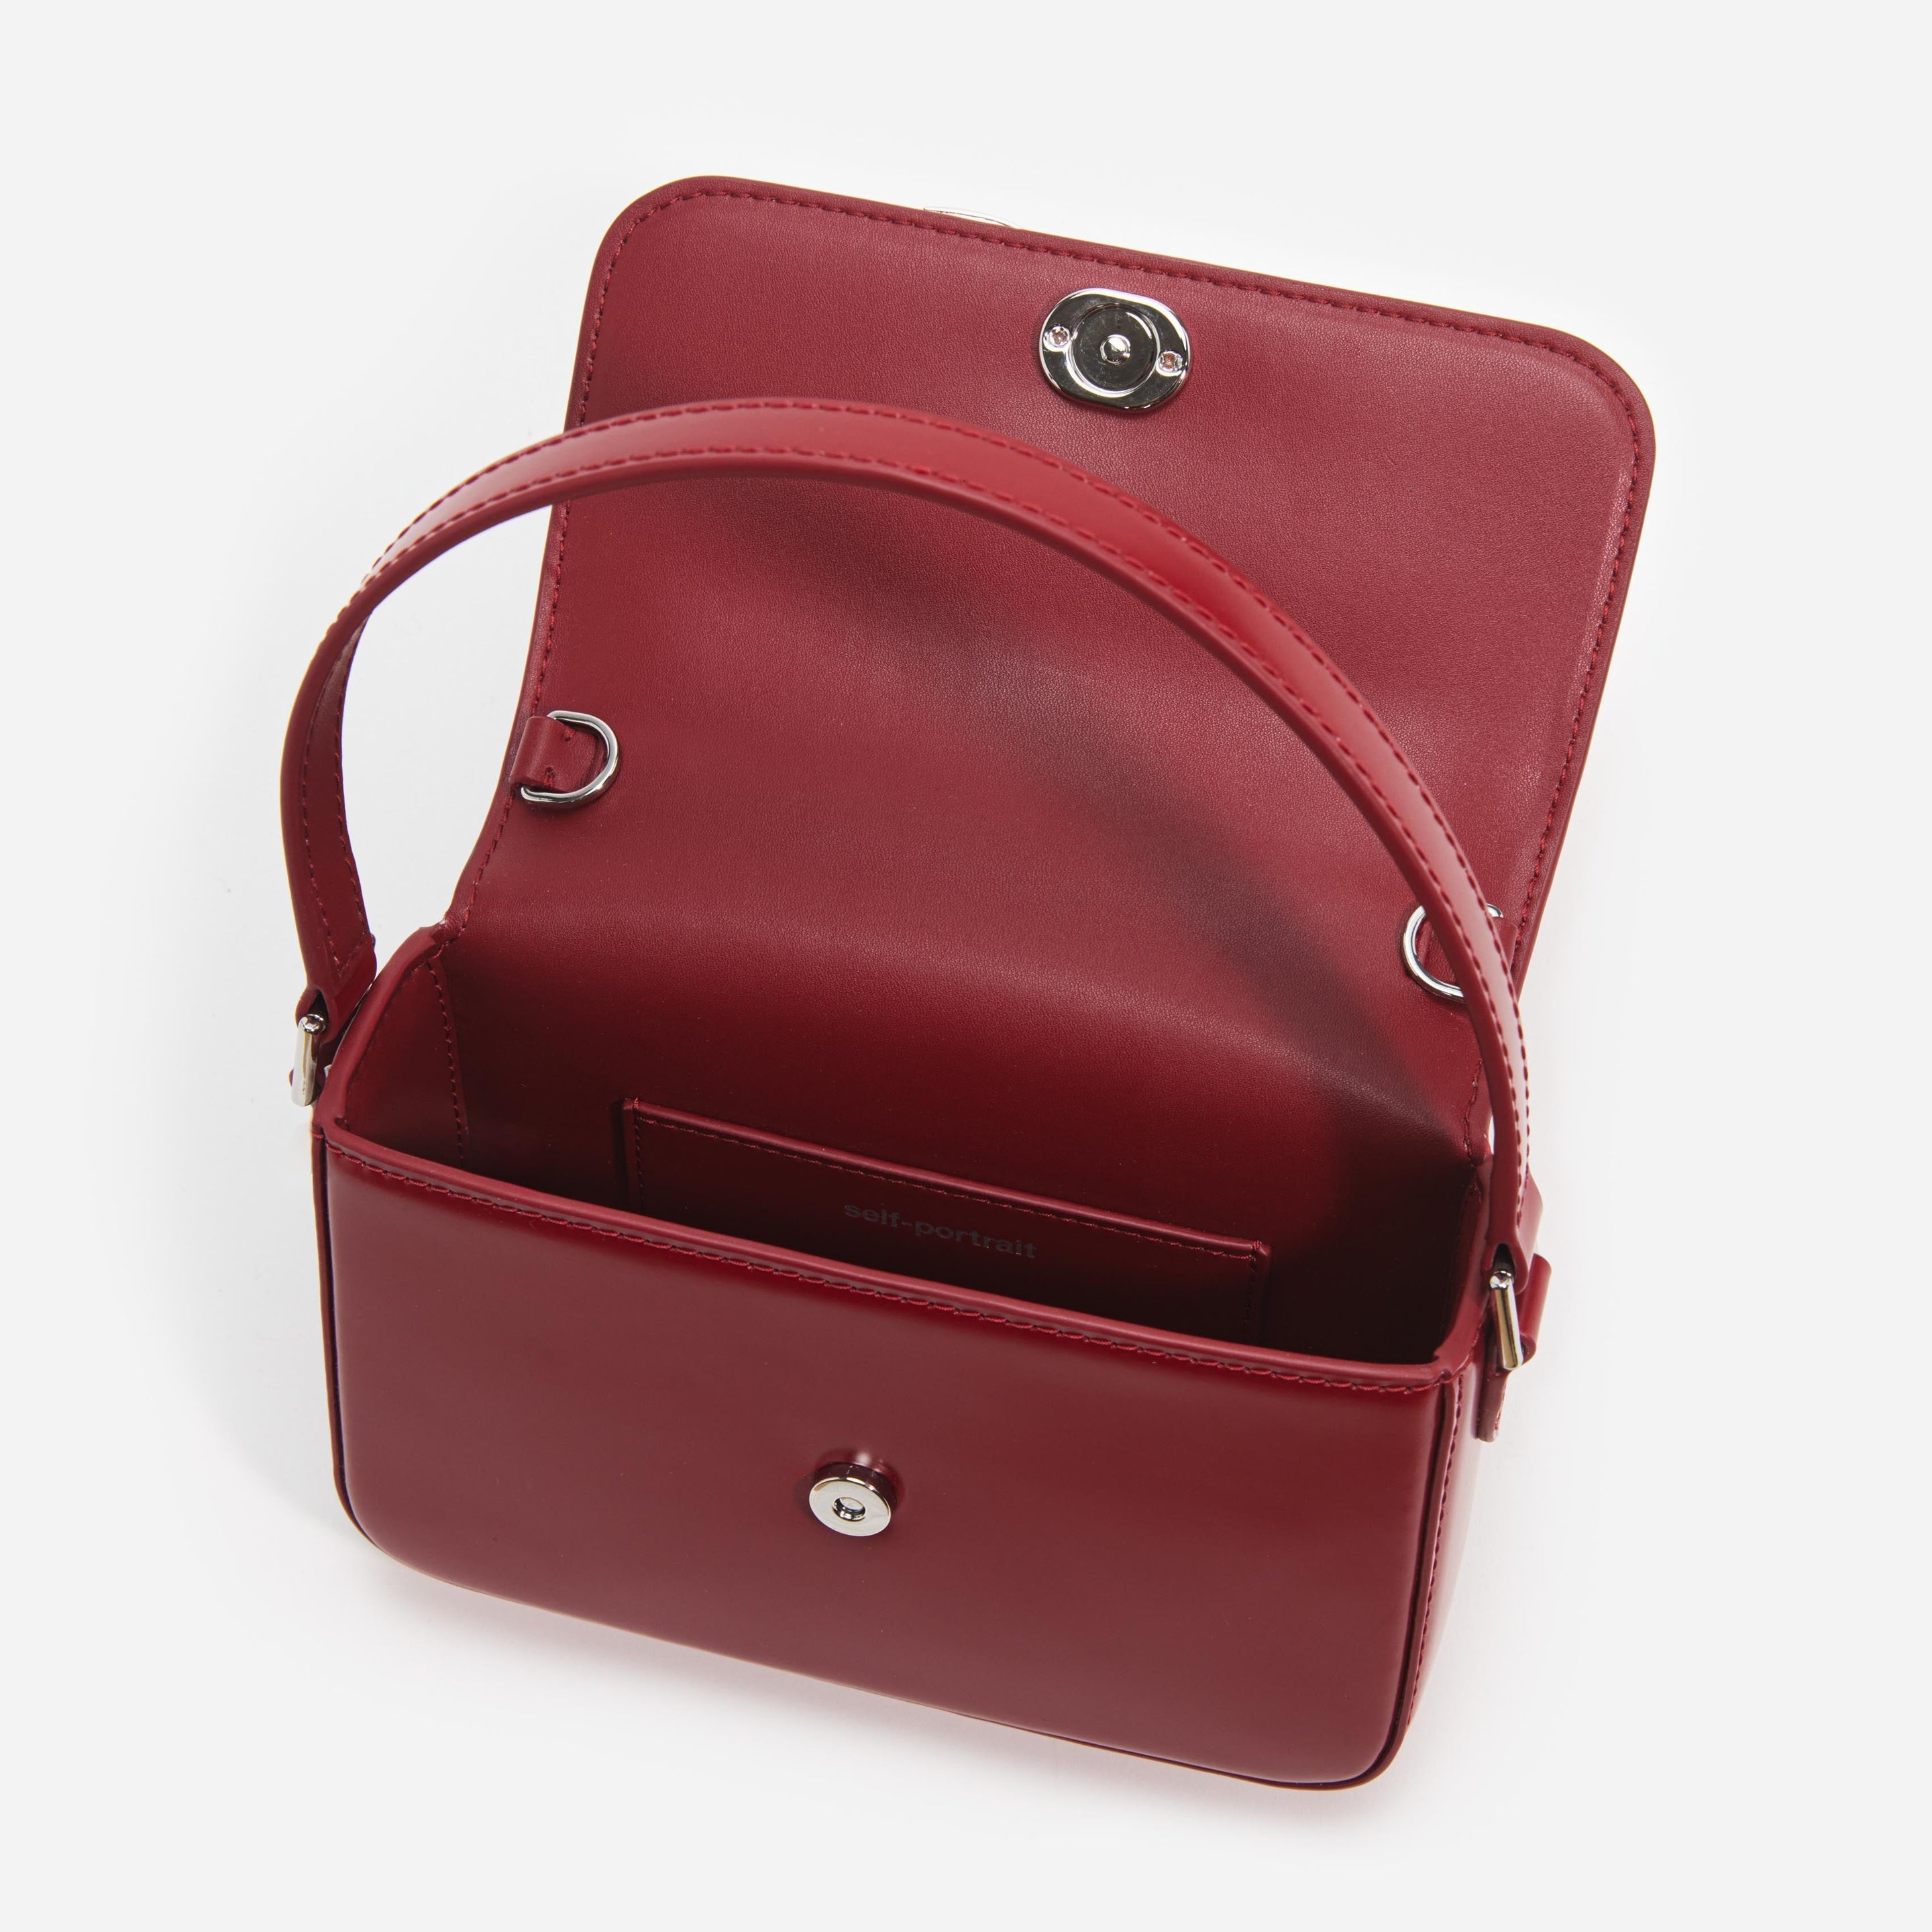 Burgundy Leather Micro Bag - 5